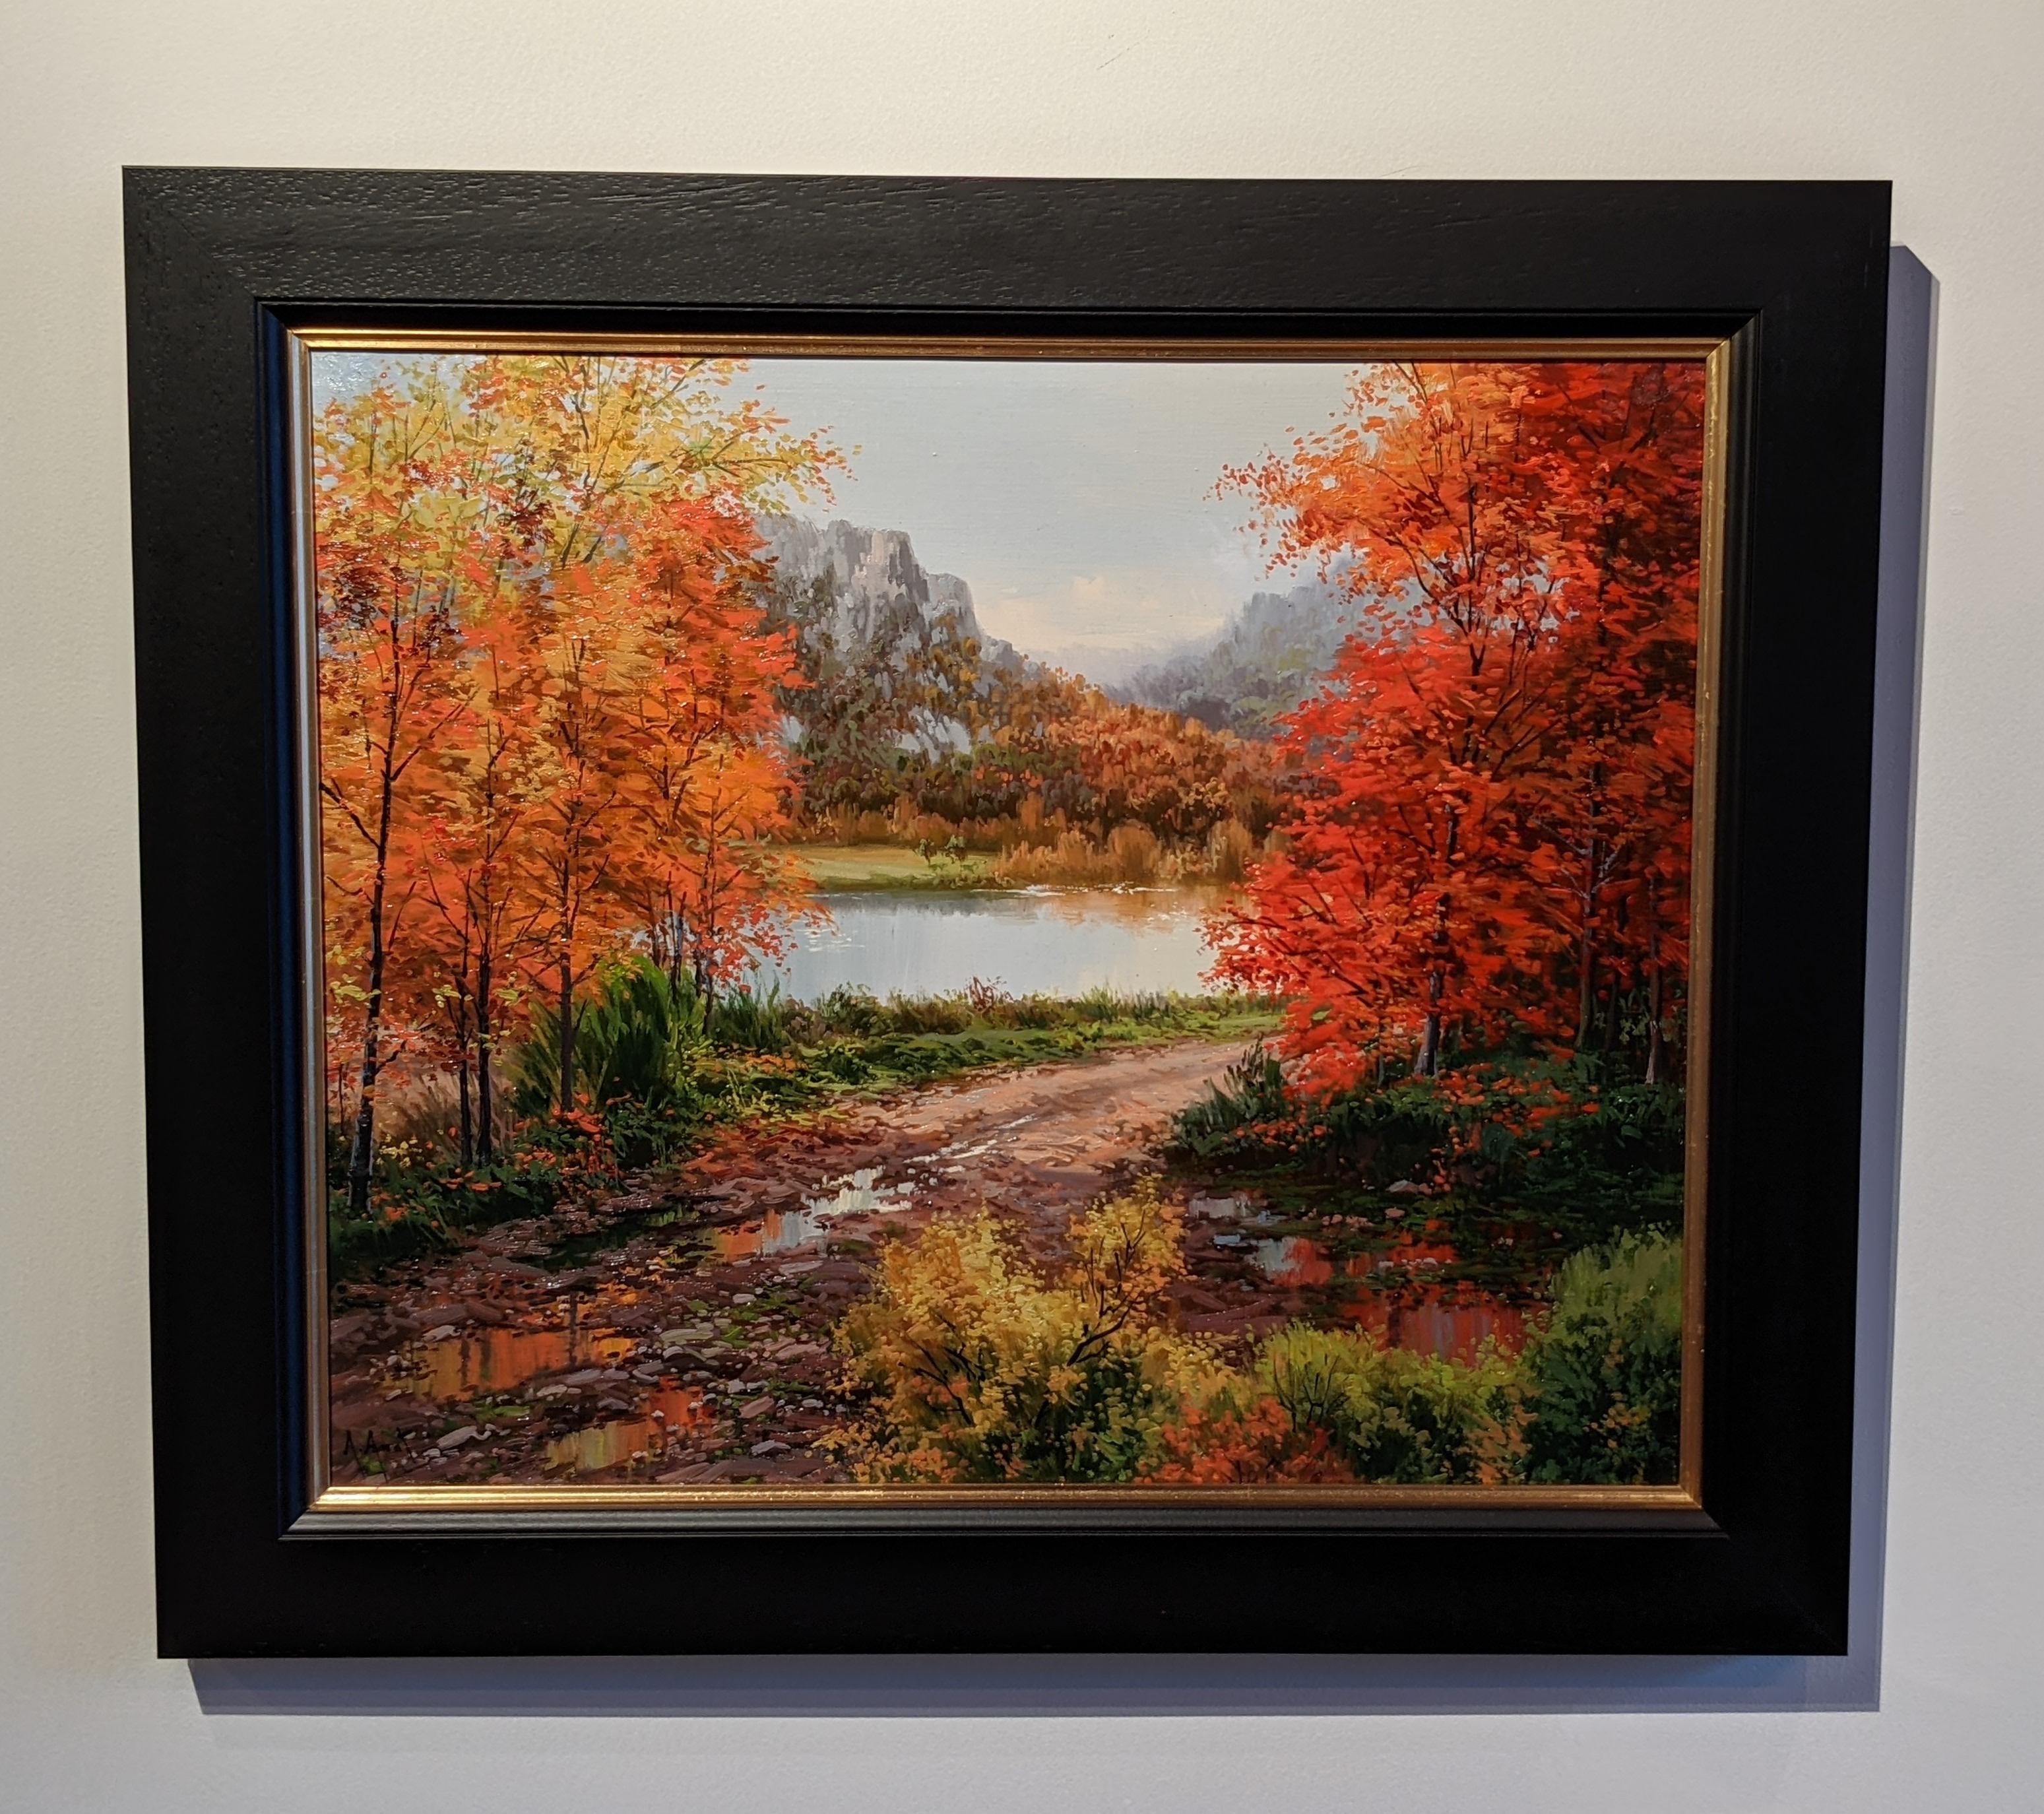 Arnau Amat Landscape Painting – Zeitgenössisches farbenfrohes Landschaftsgemälde „Autumn View“ mit Bäumen und Fluss